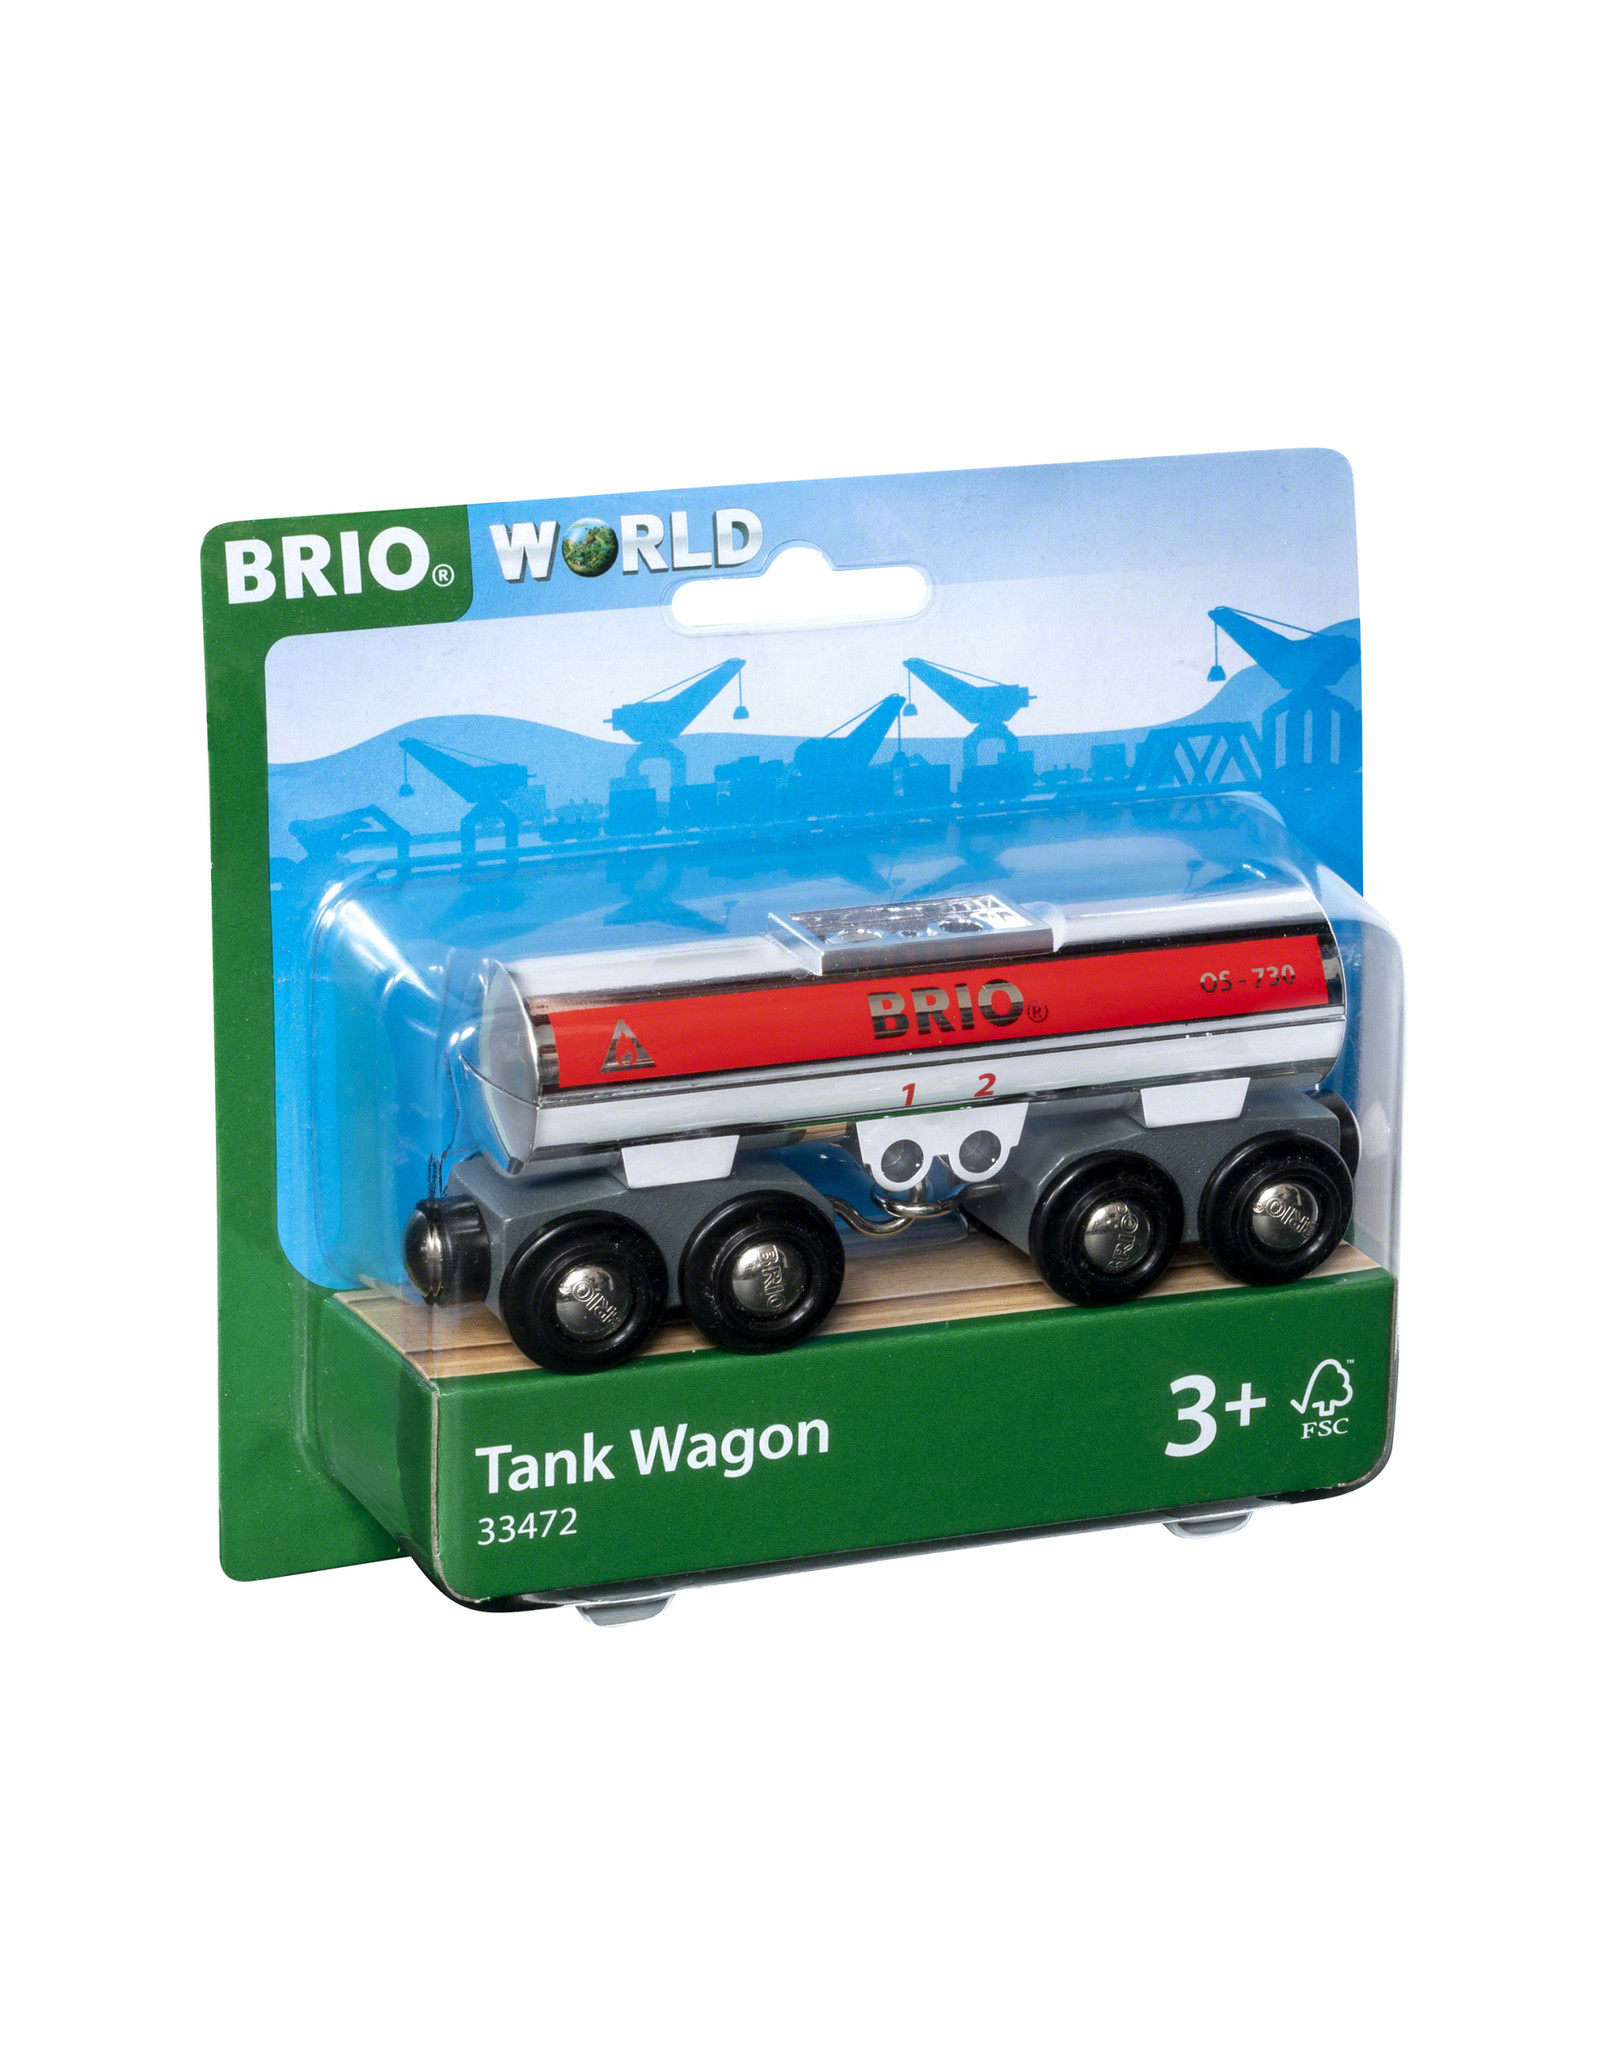 Brio Brio World 33472 Tank Wagon